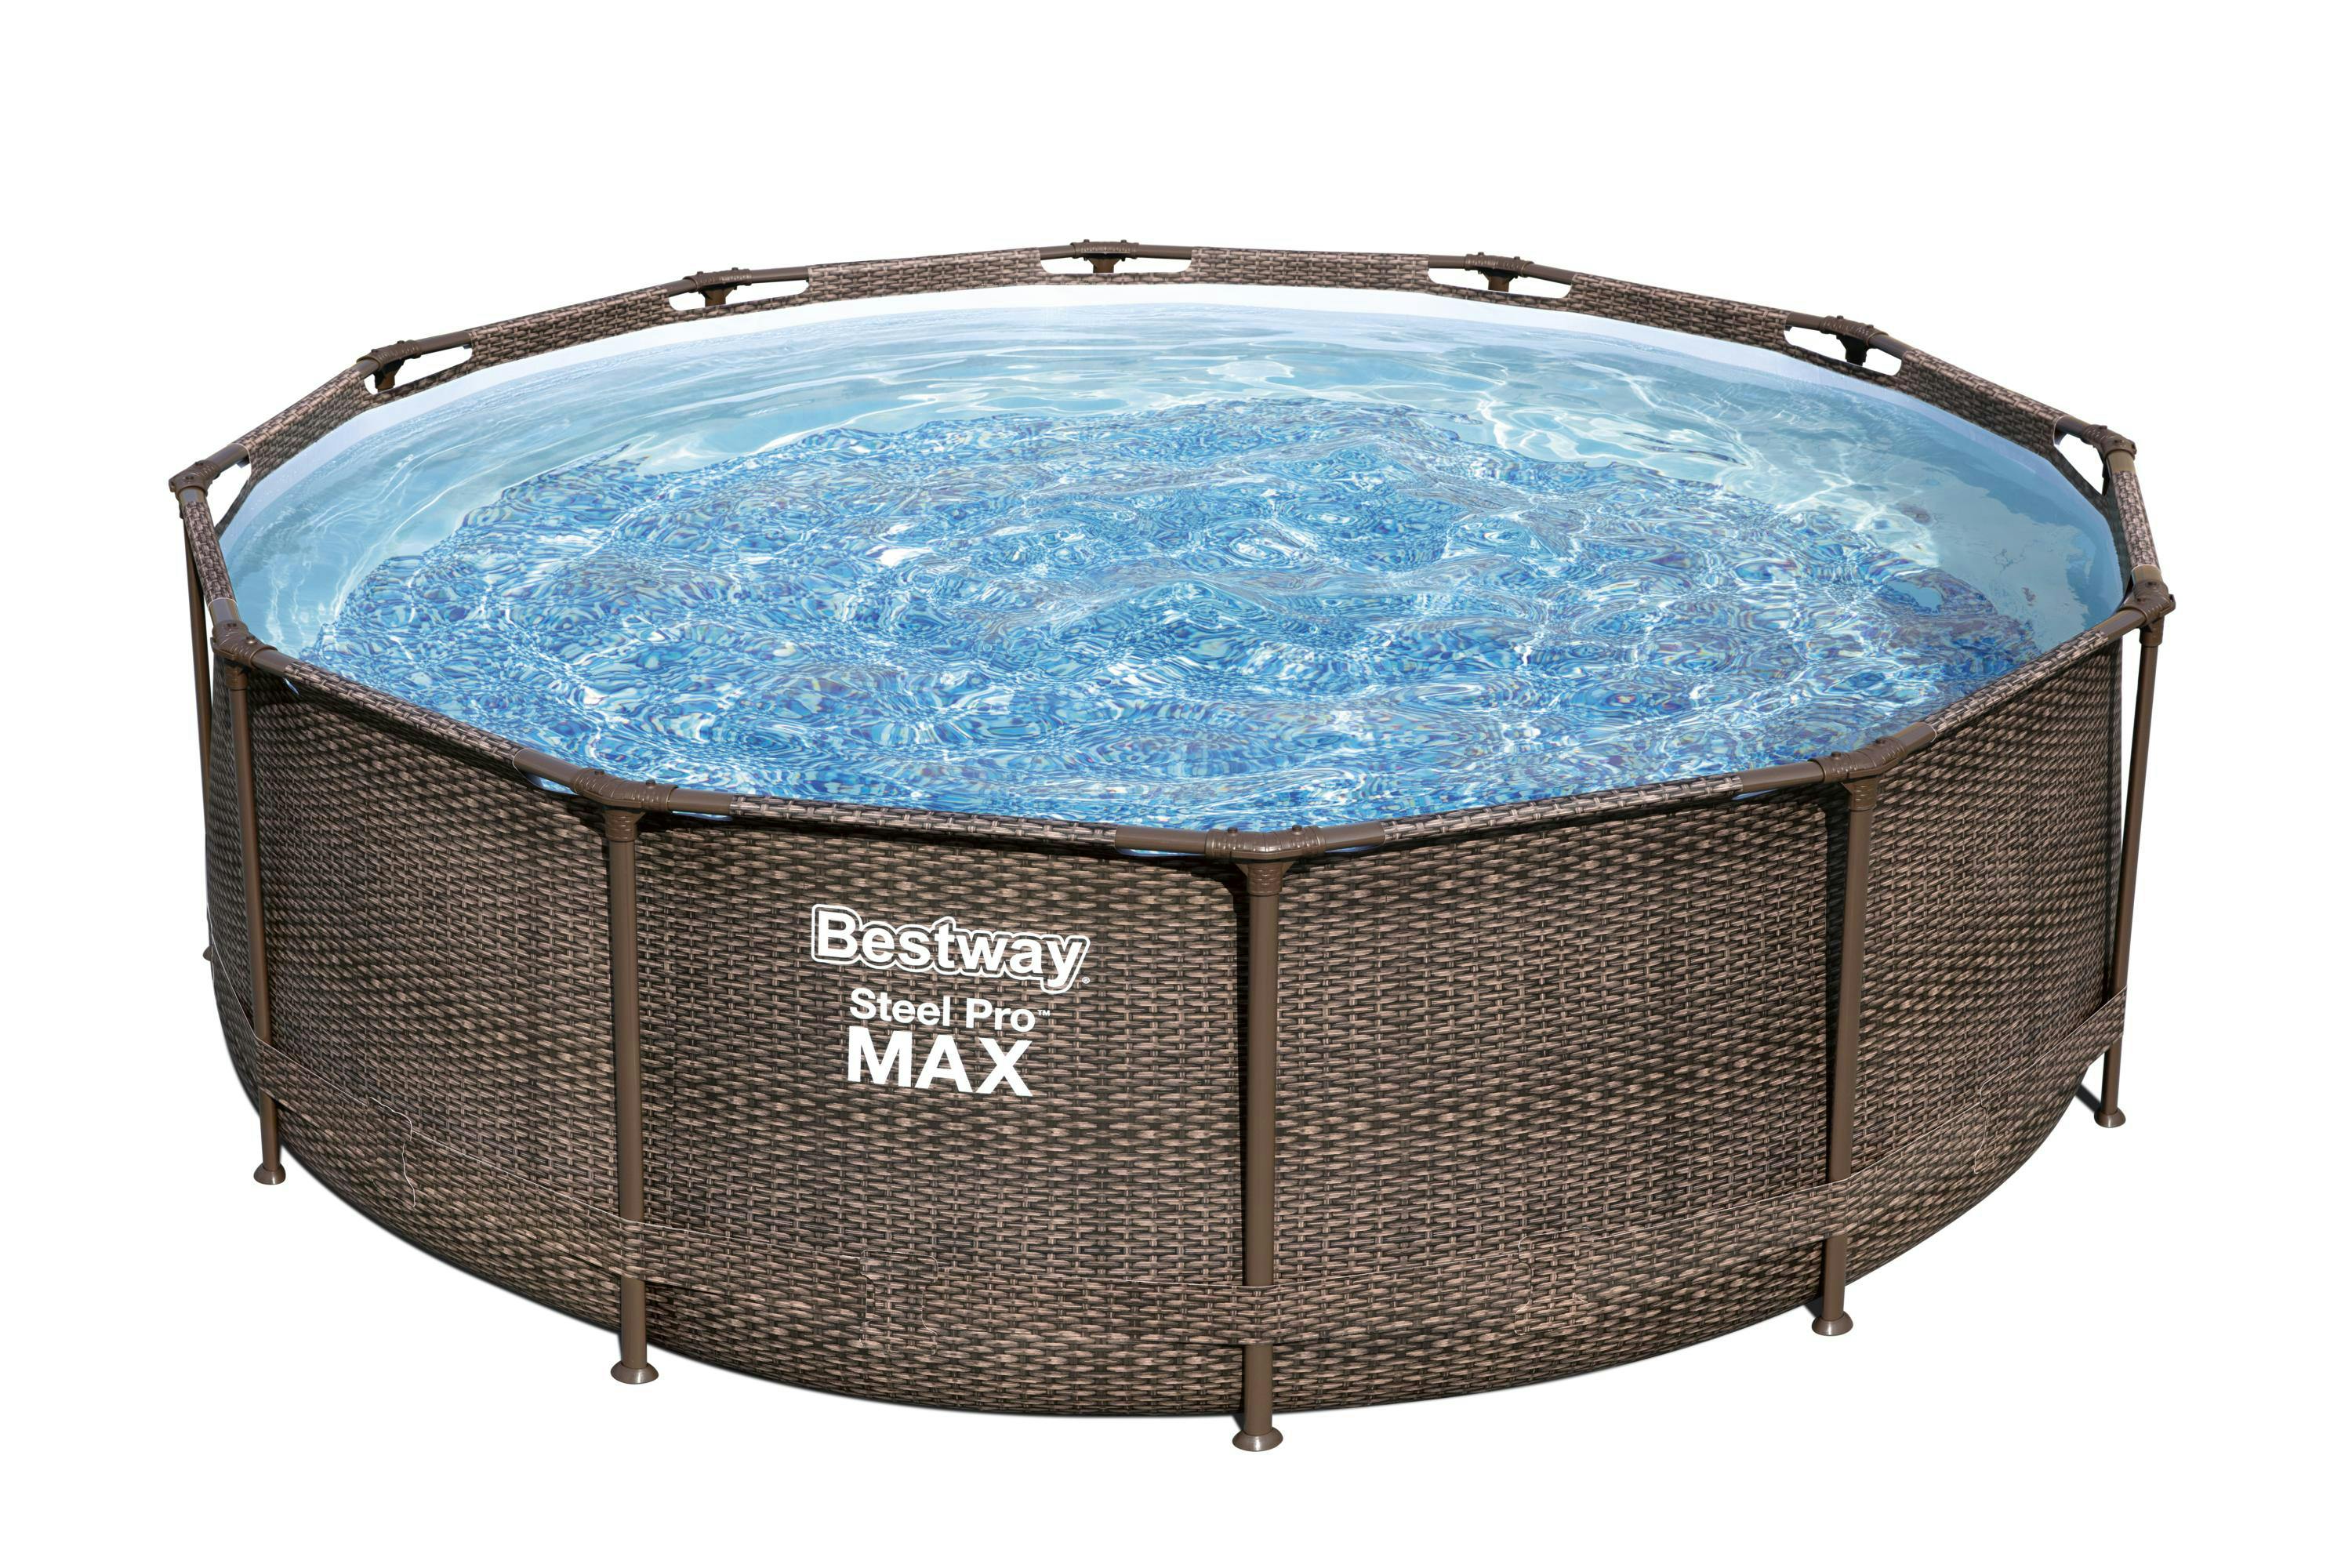 Steel Pro MAX™ Frame Pool Komplett-Set, rund, mit Filterpumpe & Sicherheitsleiter  366 x 100 cm | METRO Marktplatz